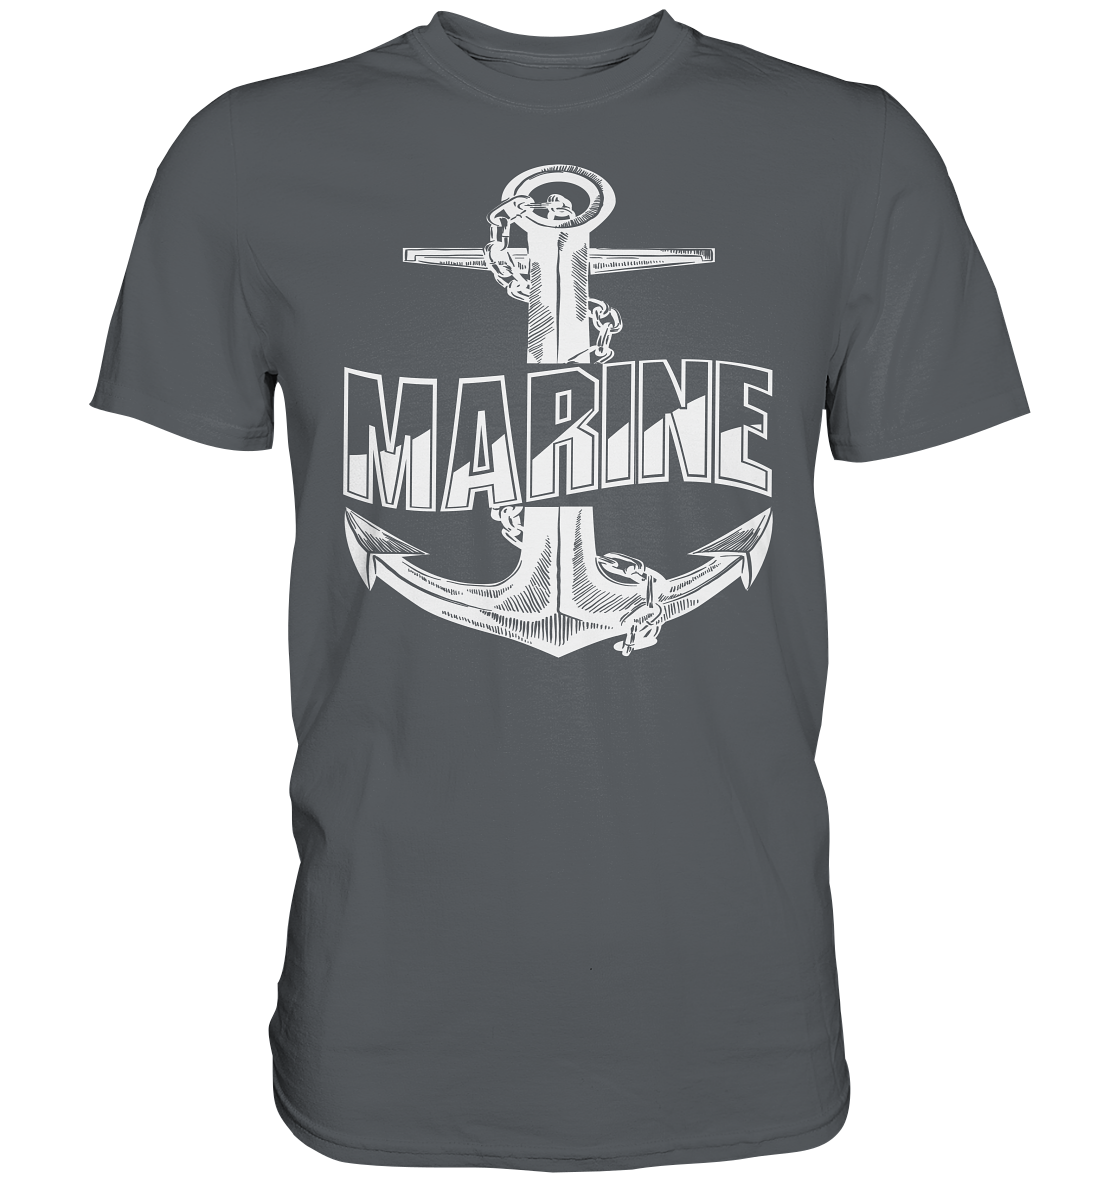 Anker MARINE - Premium Shirt